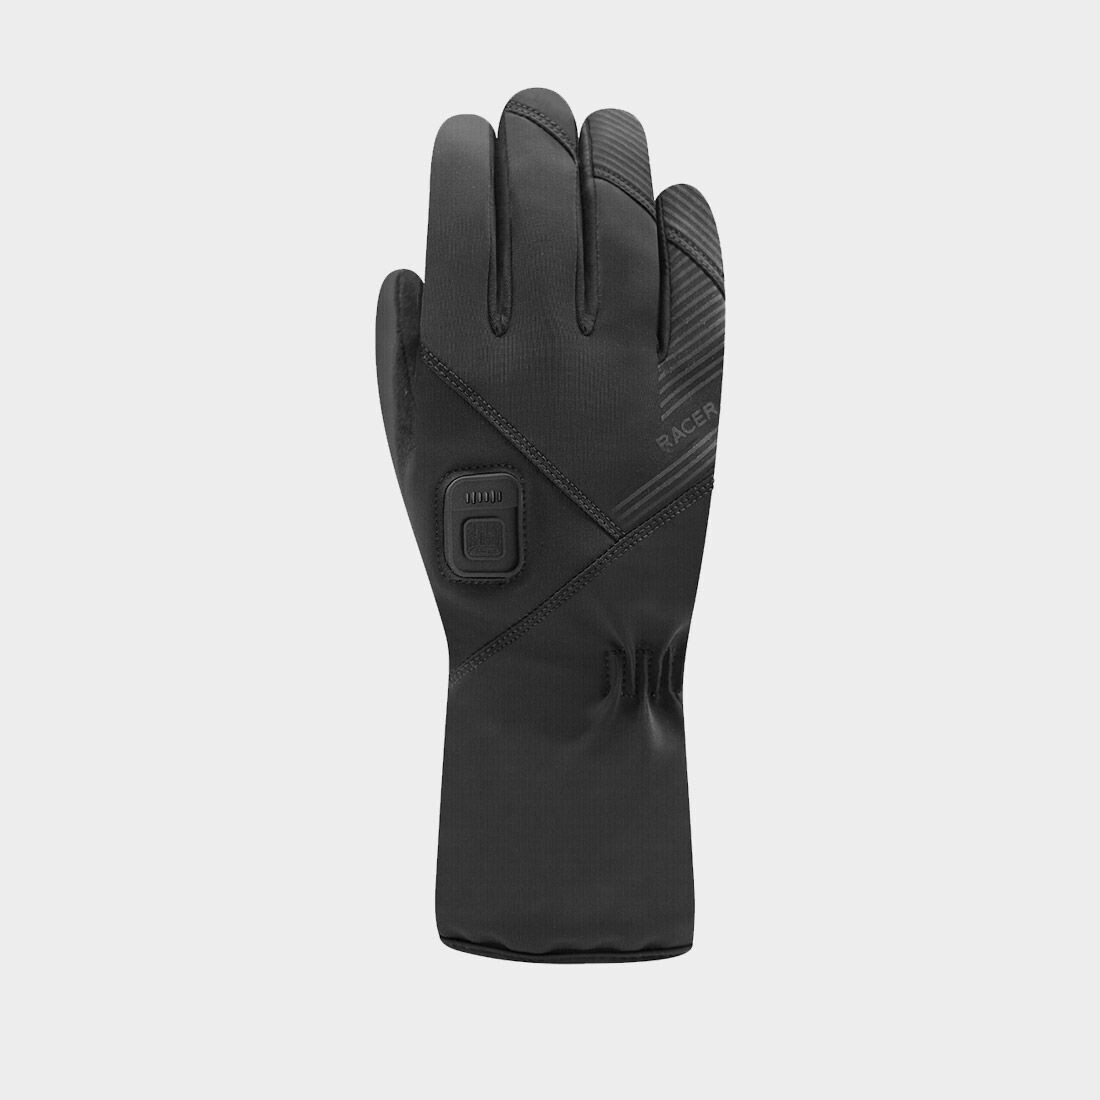 Gants chauffants Racer E-Glove 4 Black